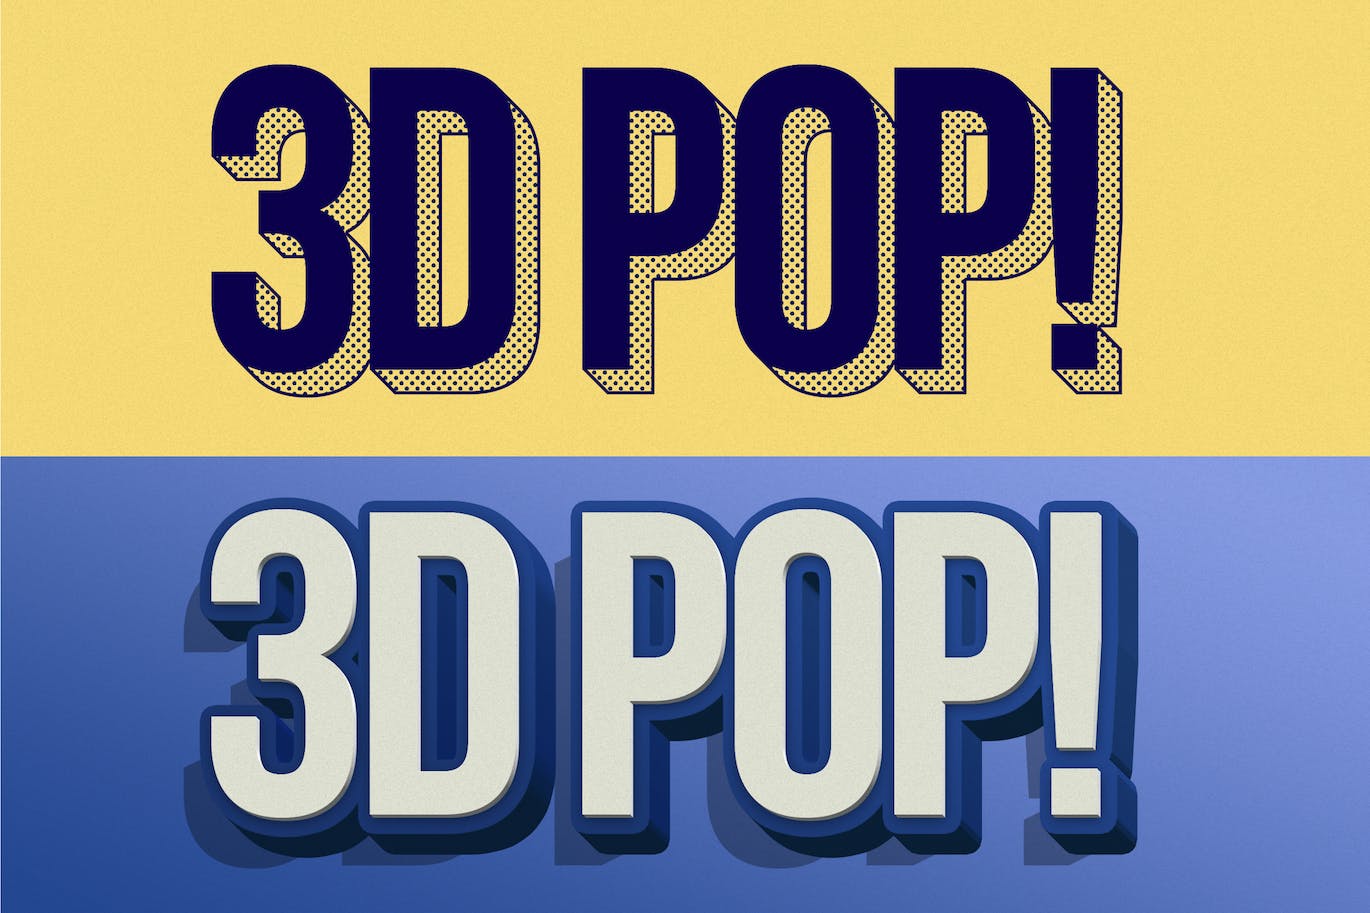 3D立体风格ps文字效果样式v2 3D POP! Photoshop Effects Vol. 2 设计素材 第7张